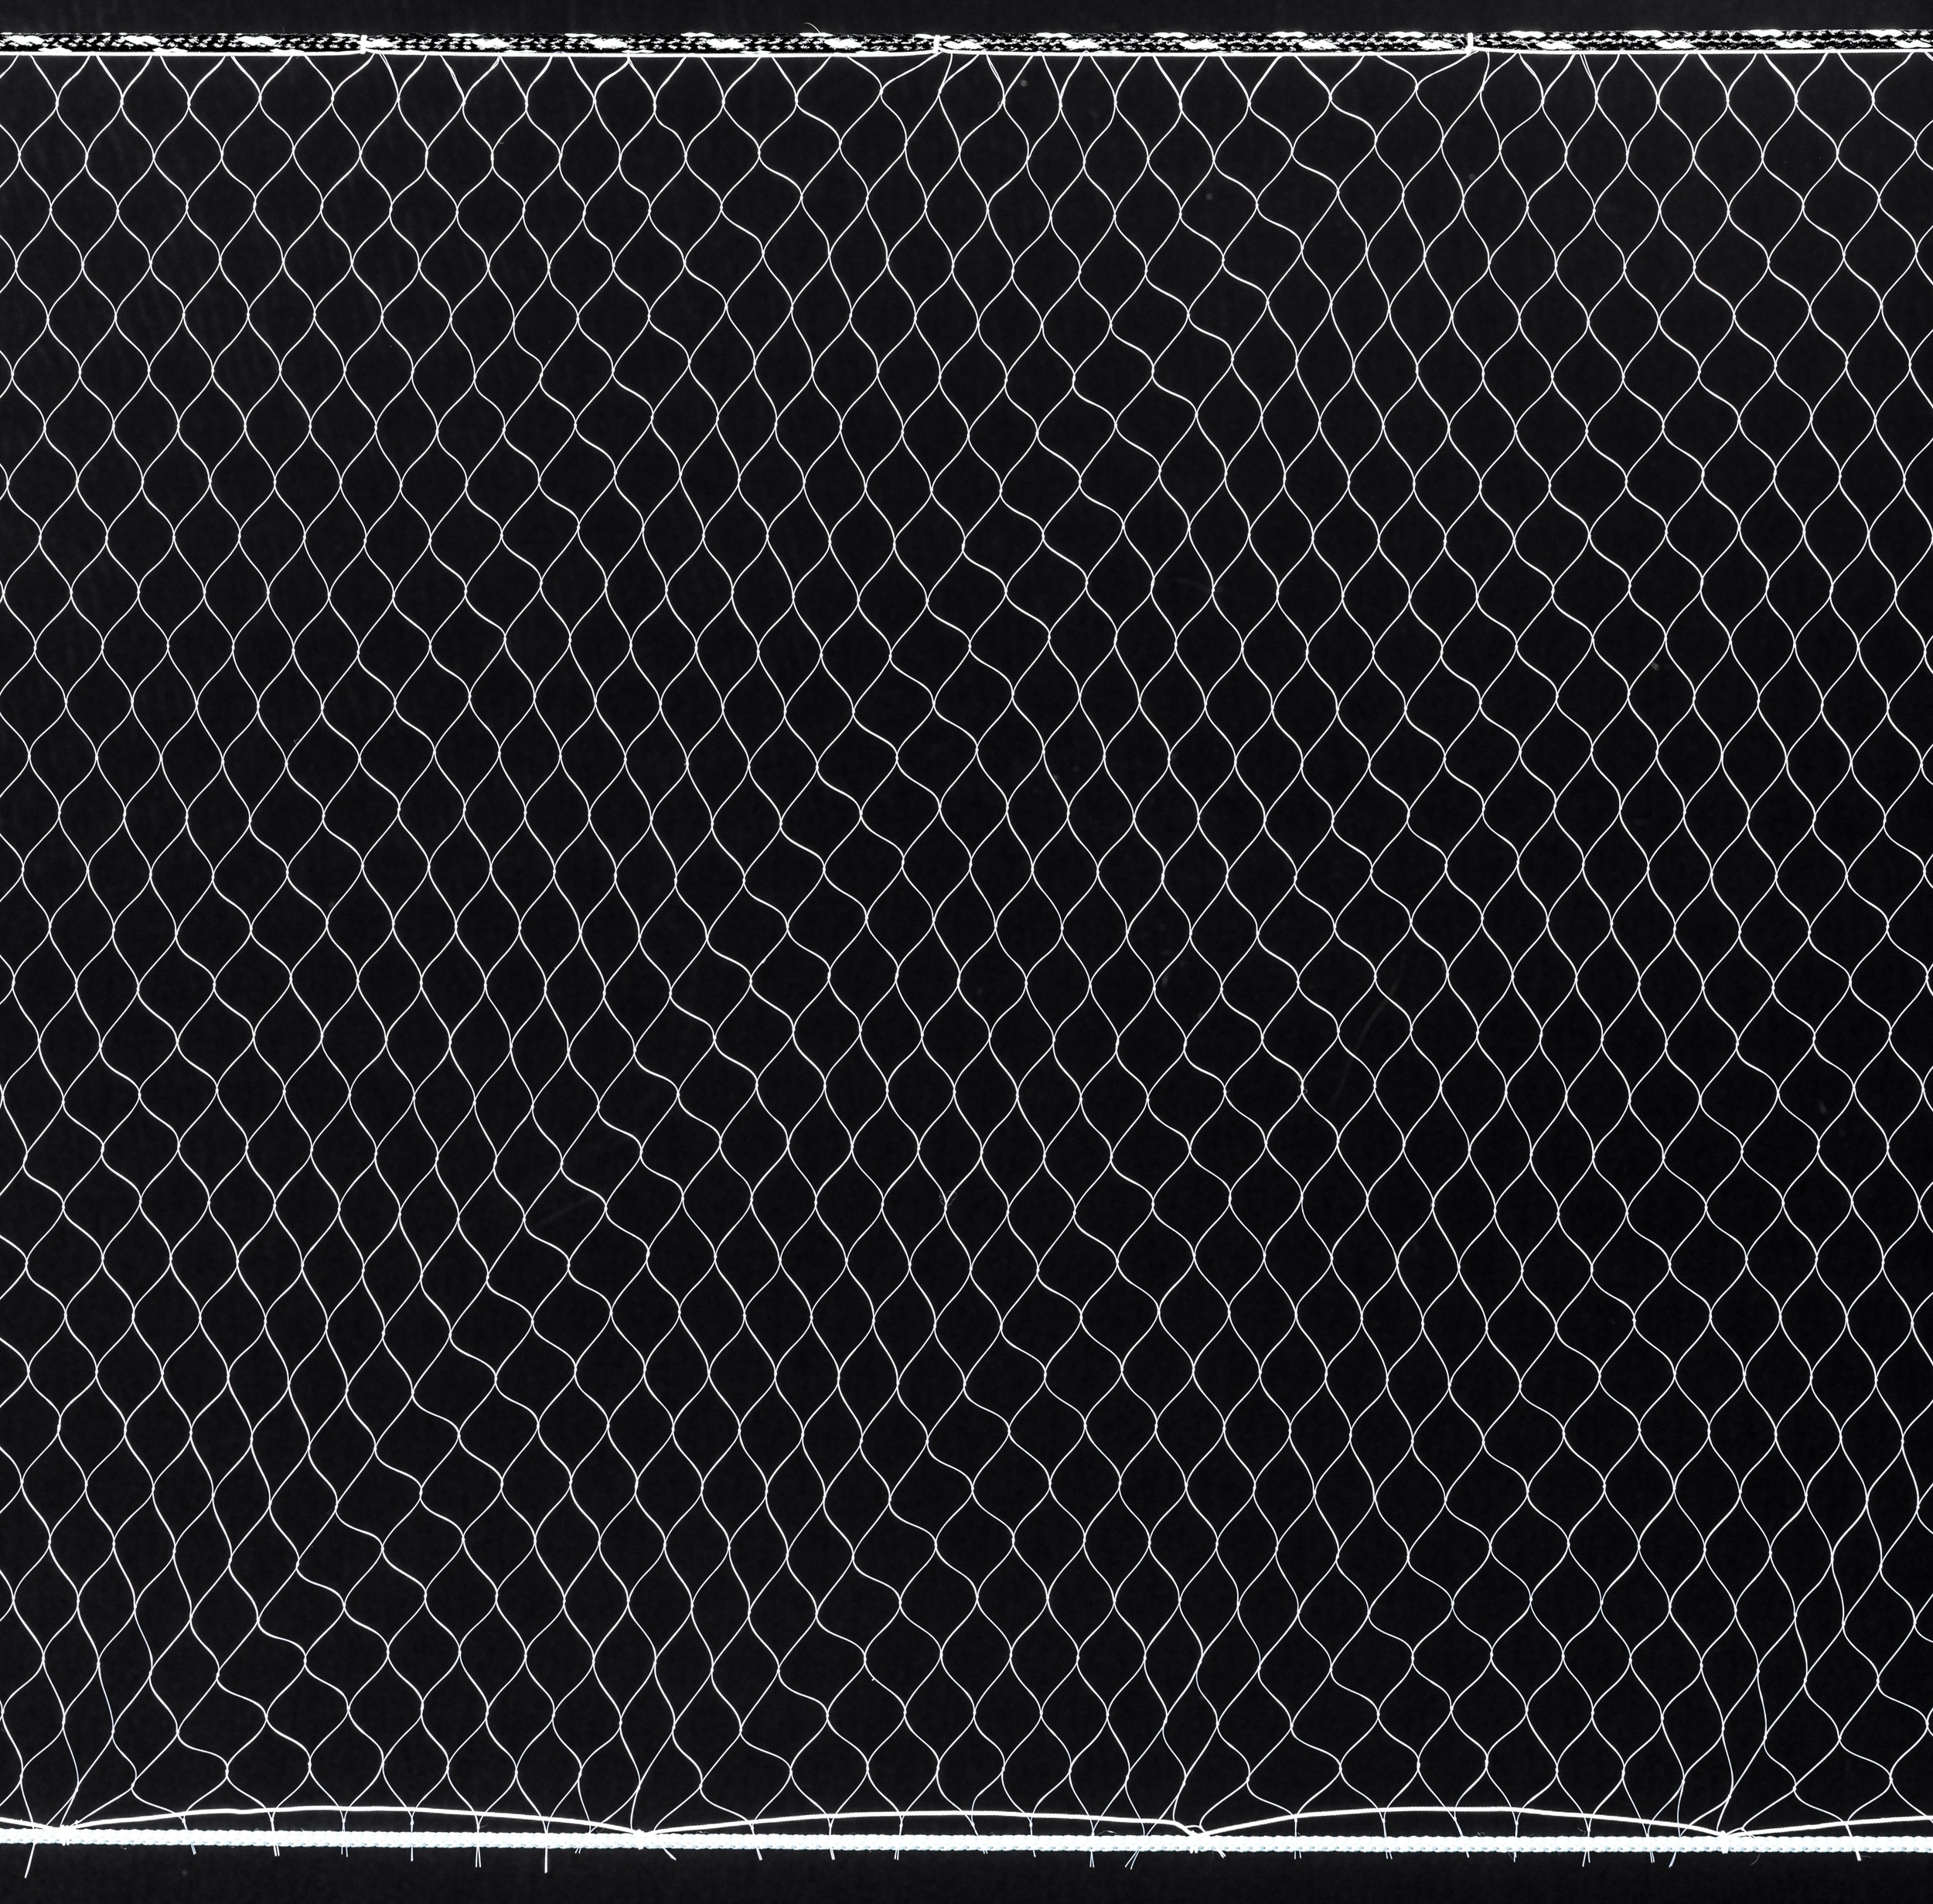 6'x200 Sheet Netting mono 0.25 mm fishing gill net making material